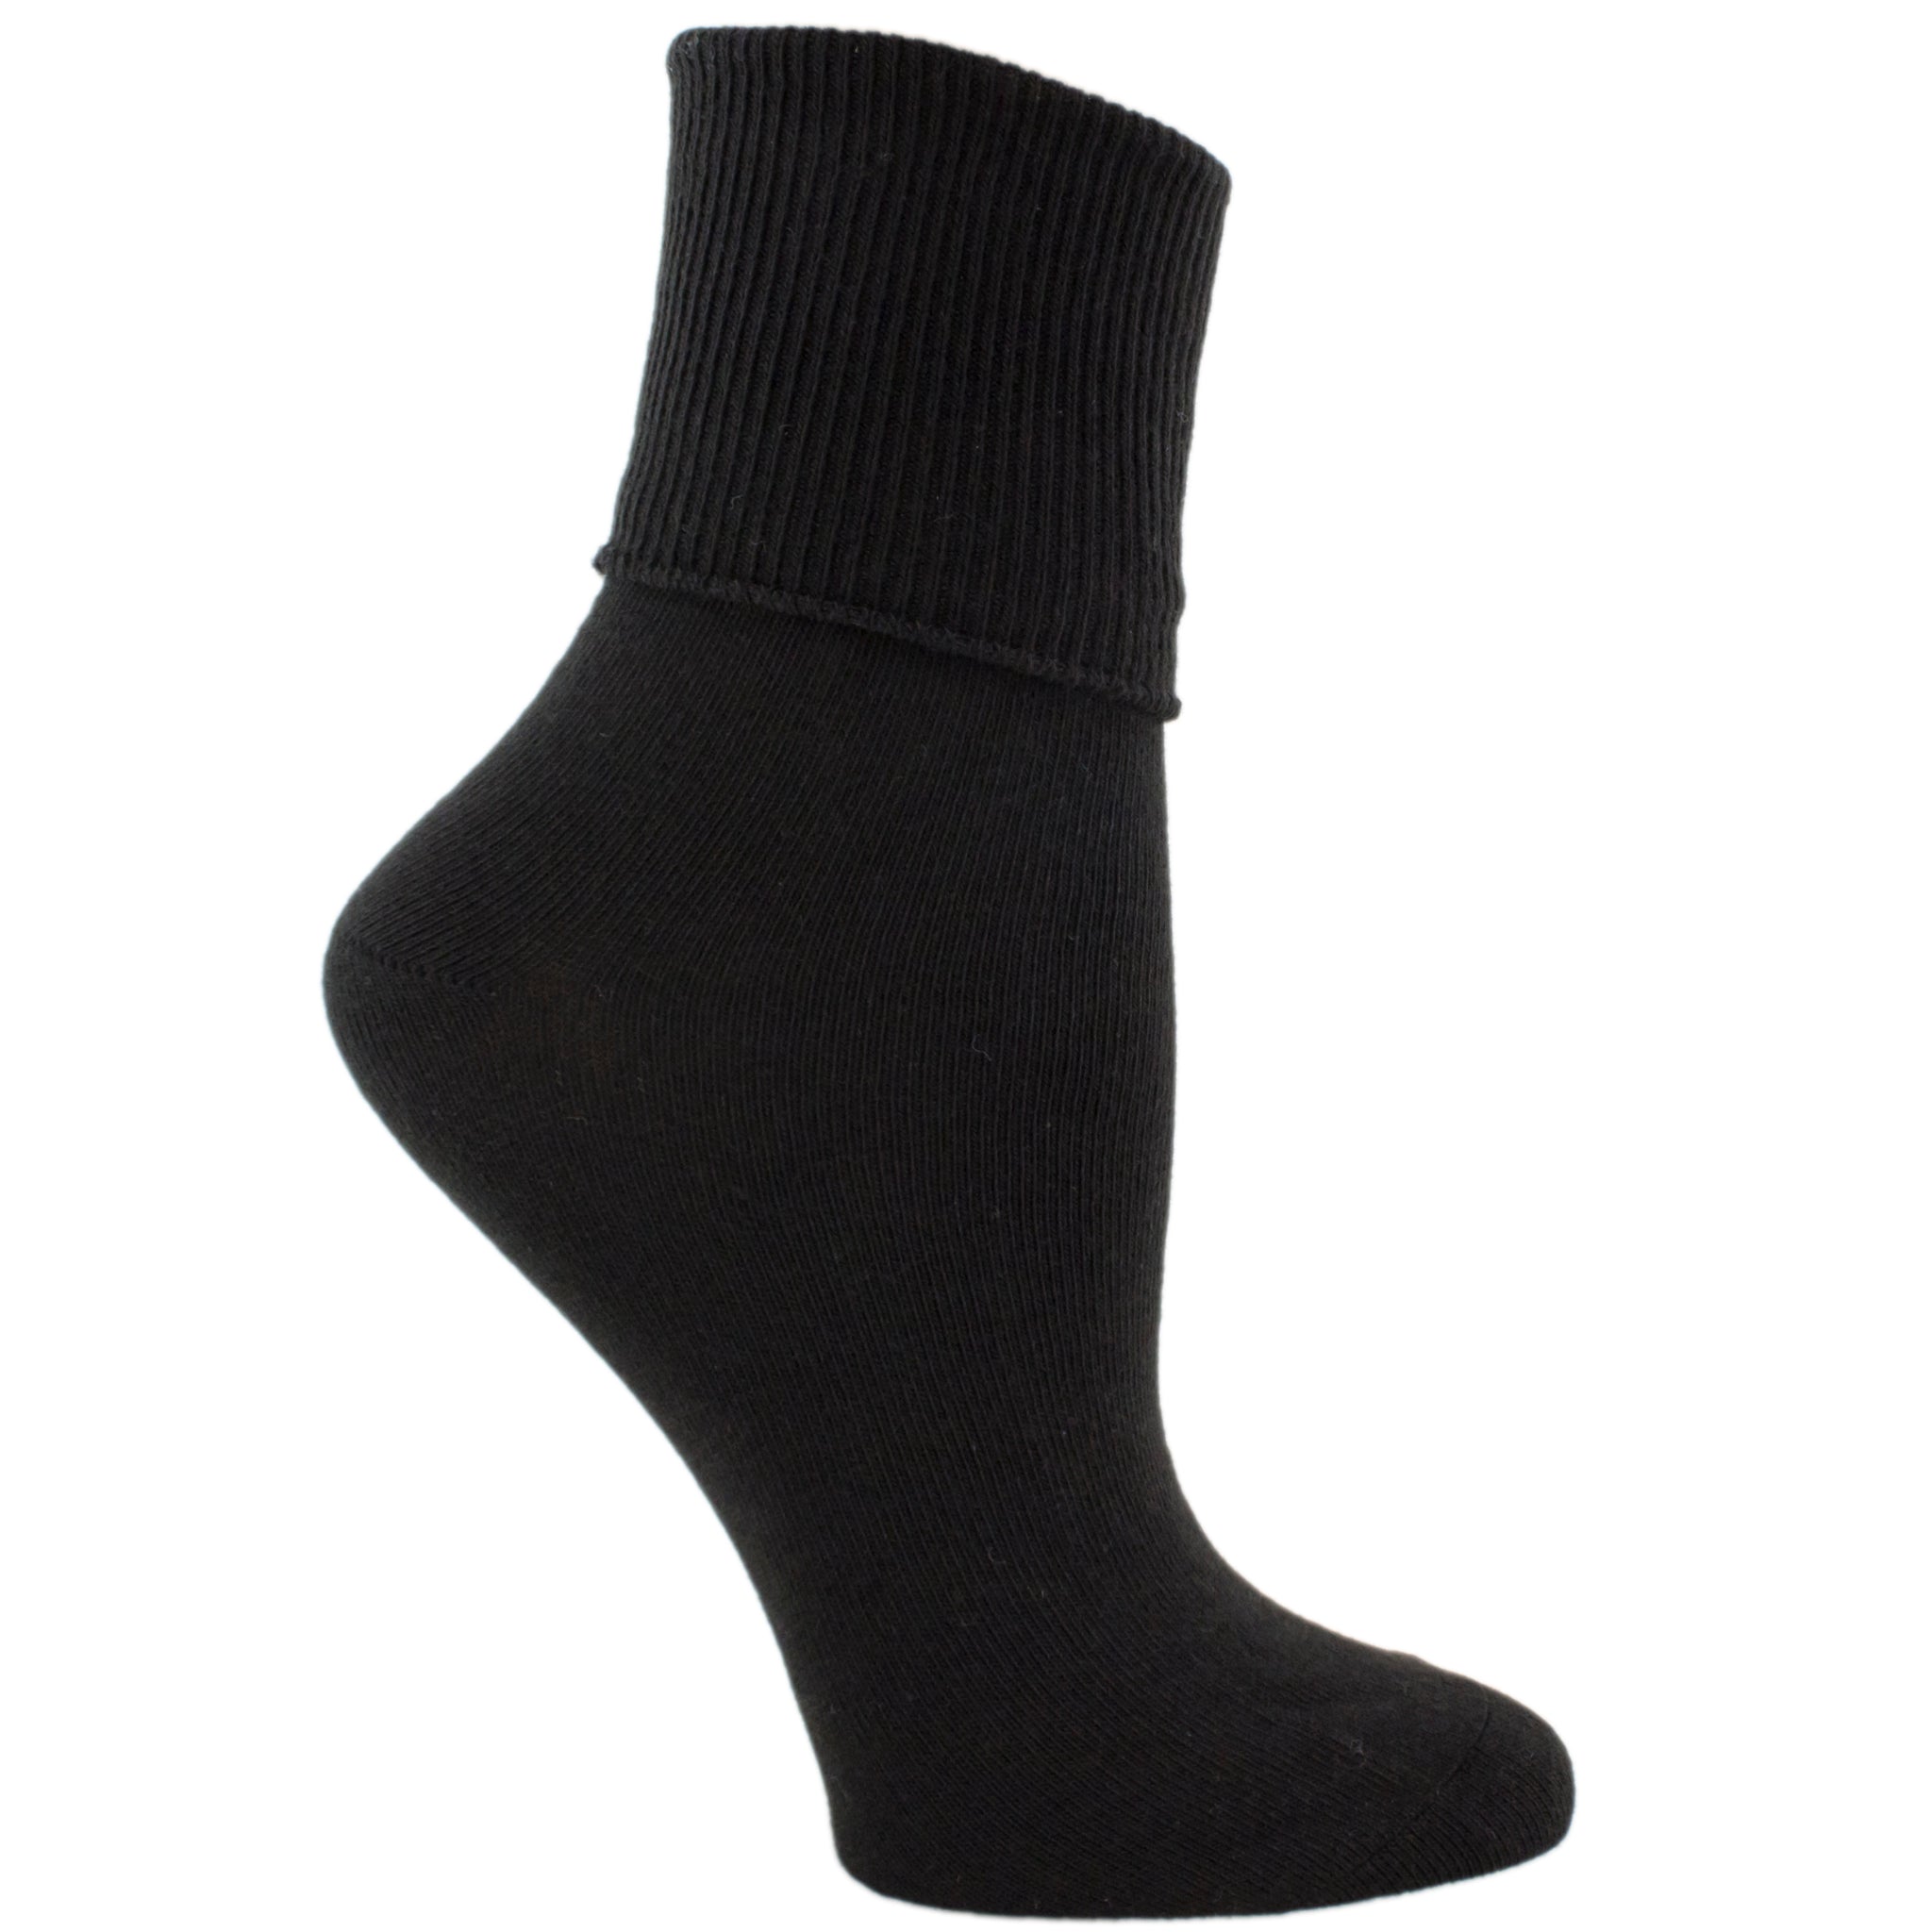 Jefferies Women's Turn Cuff Socks 2200 – Good's Store Online